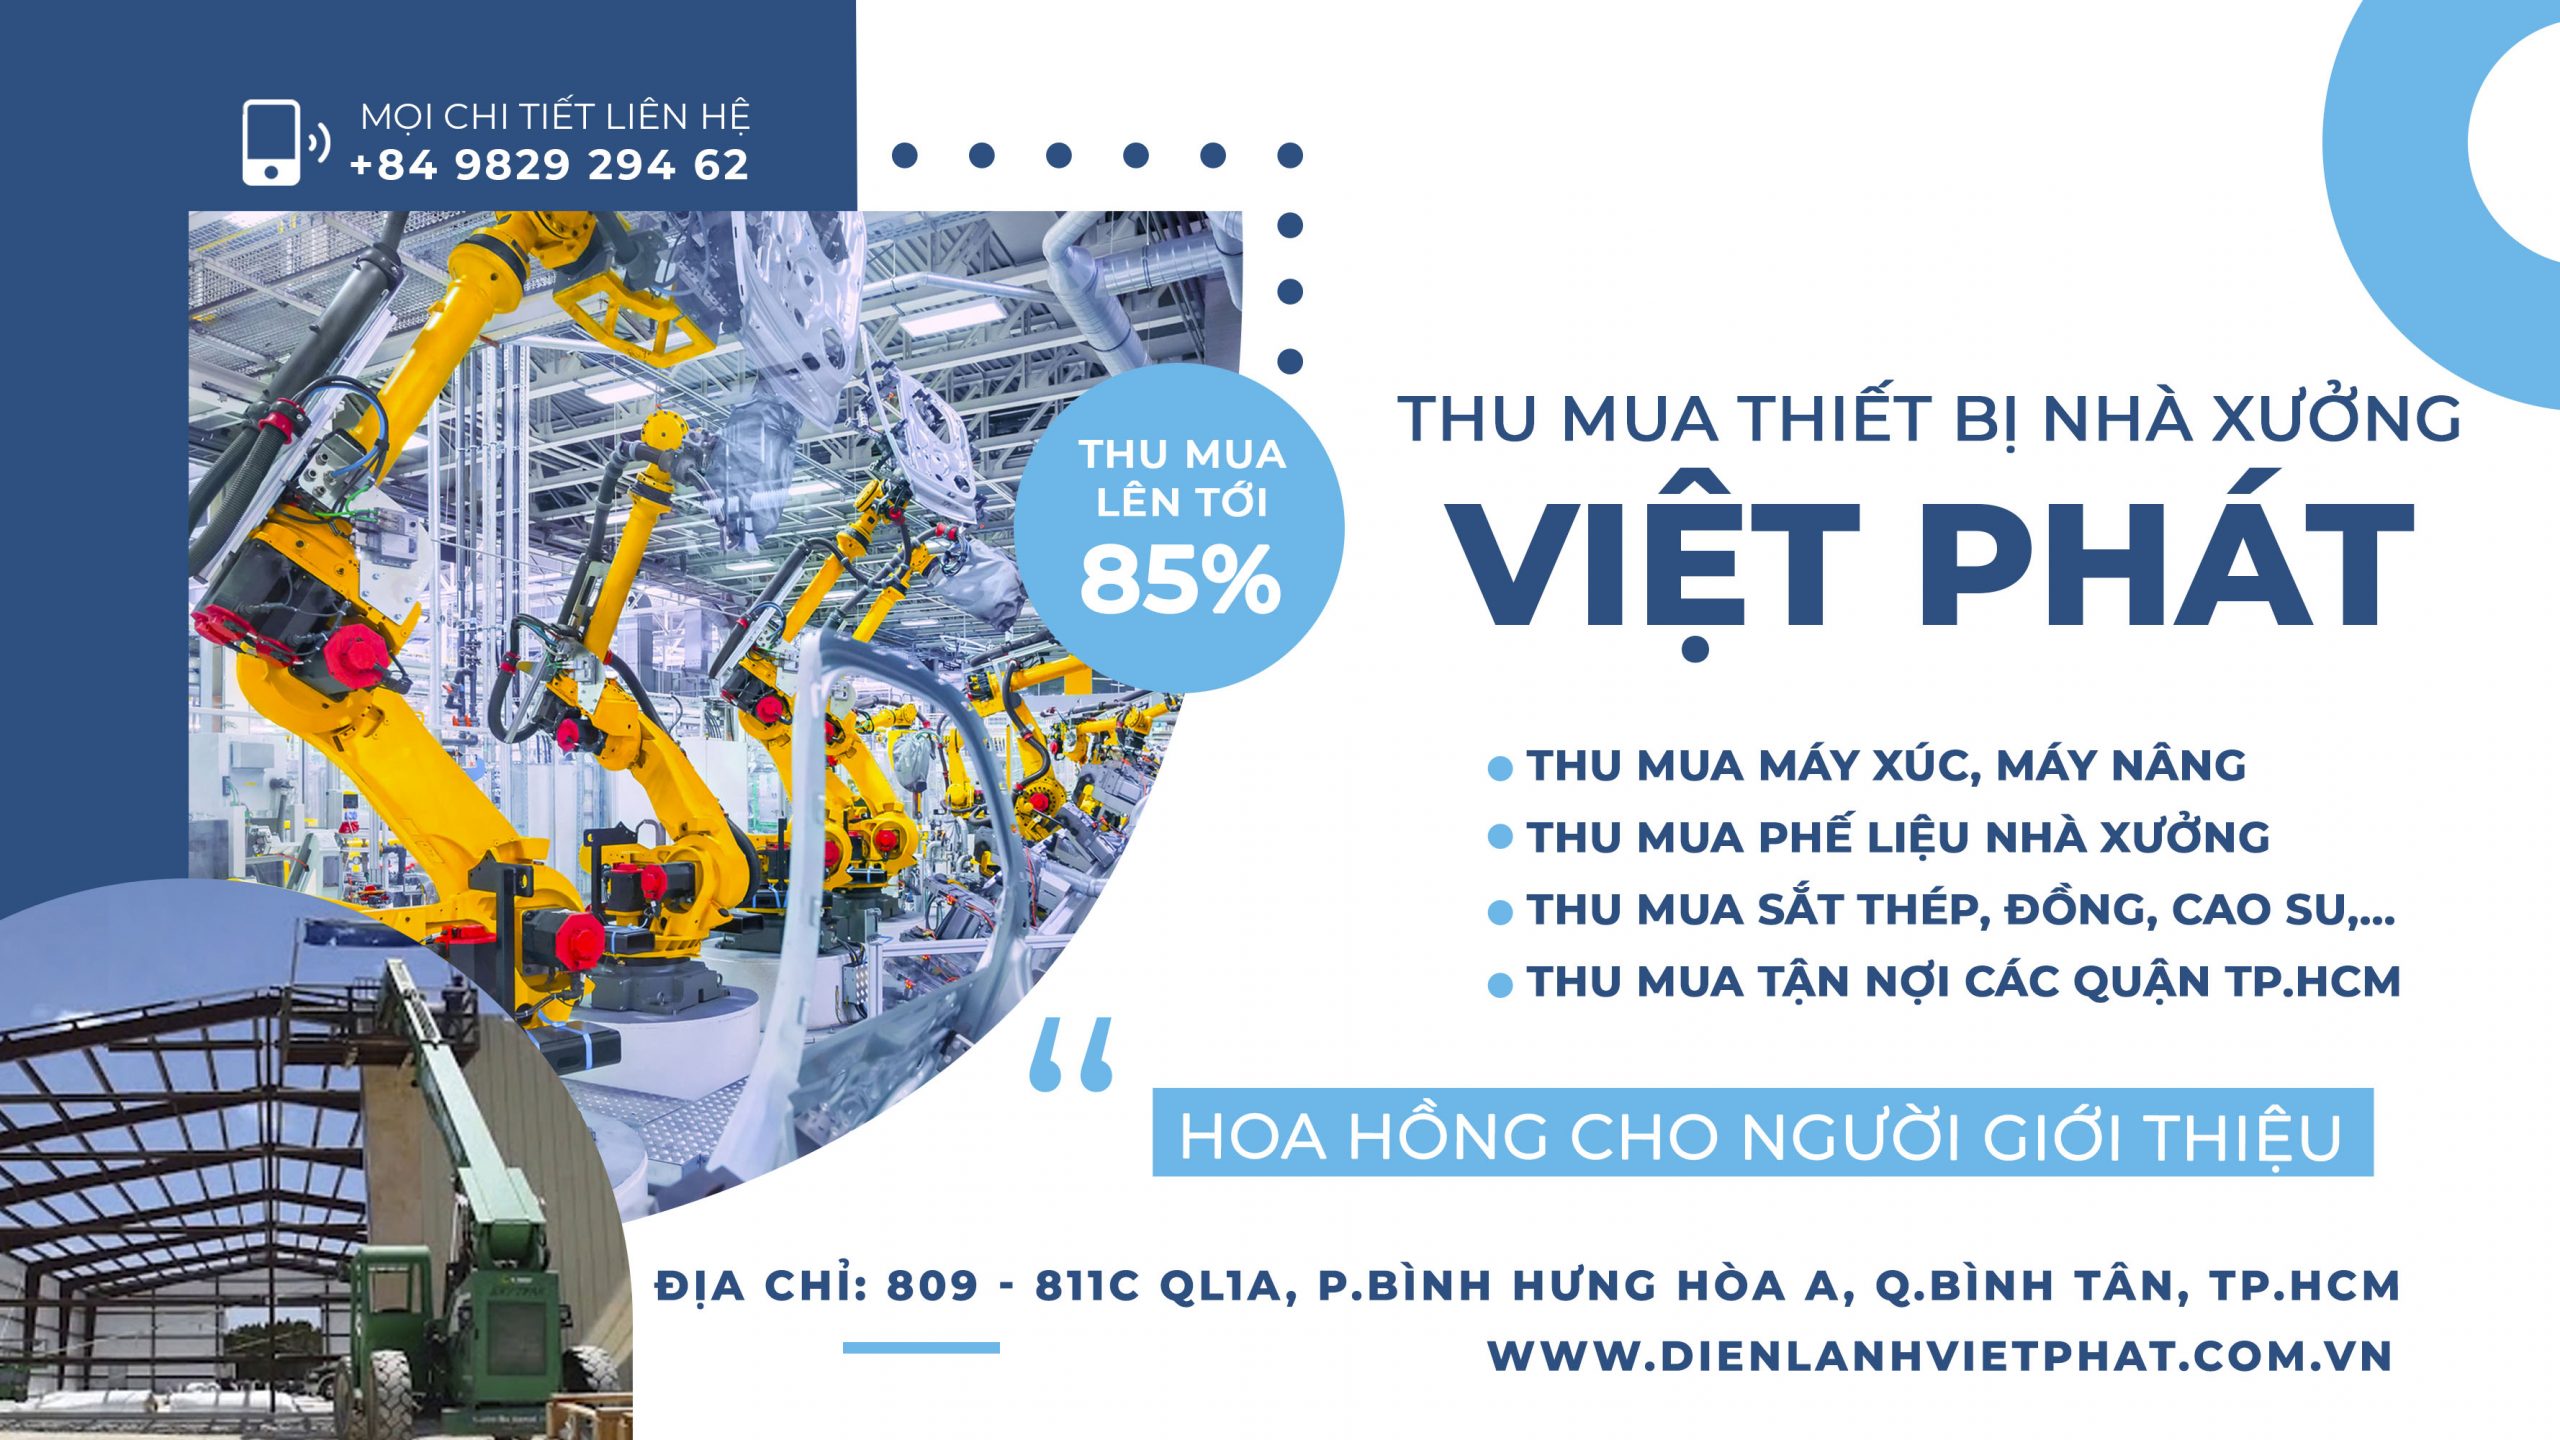 Dịch vụ thu mua phế liệu nhà xưởng – Việt Phát